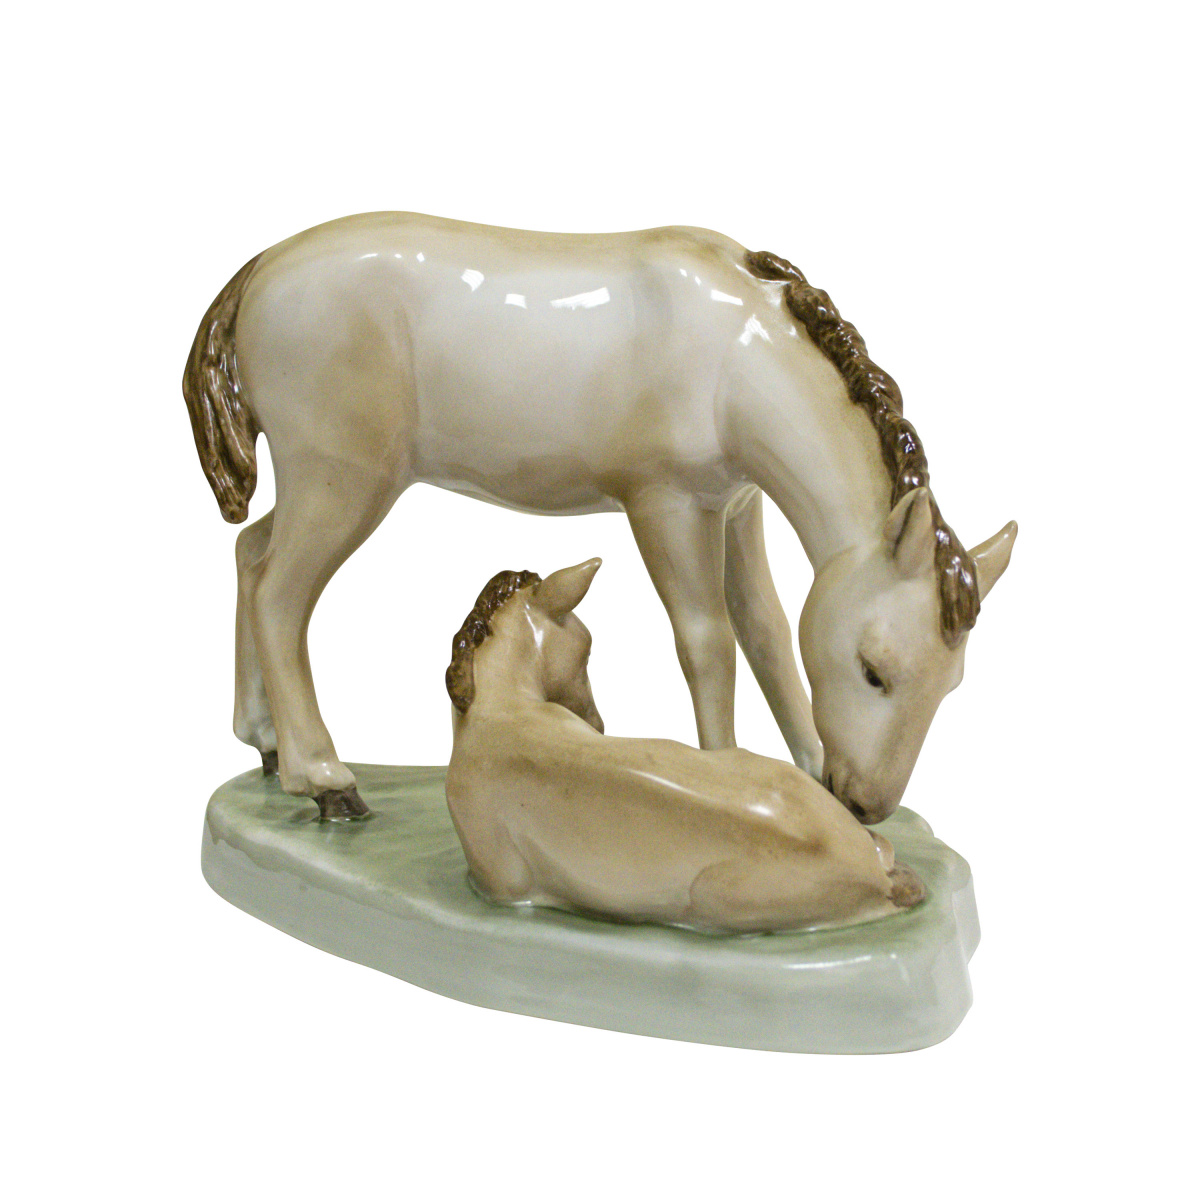 Скульптура "Материнство" ( лошадь с жеребенком) автор Гатилова Е.И.